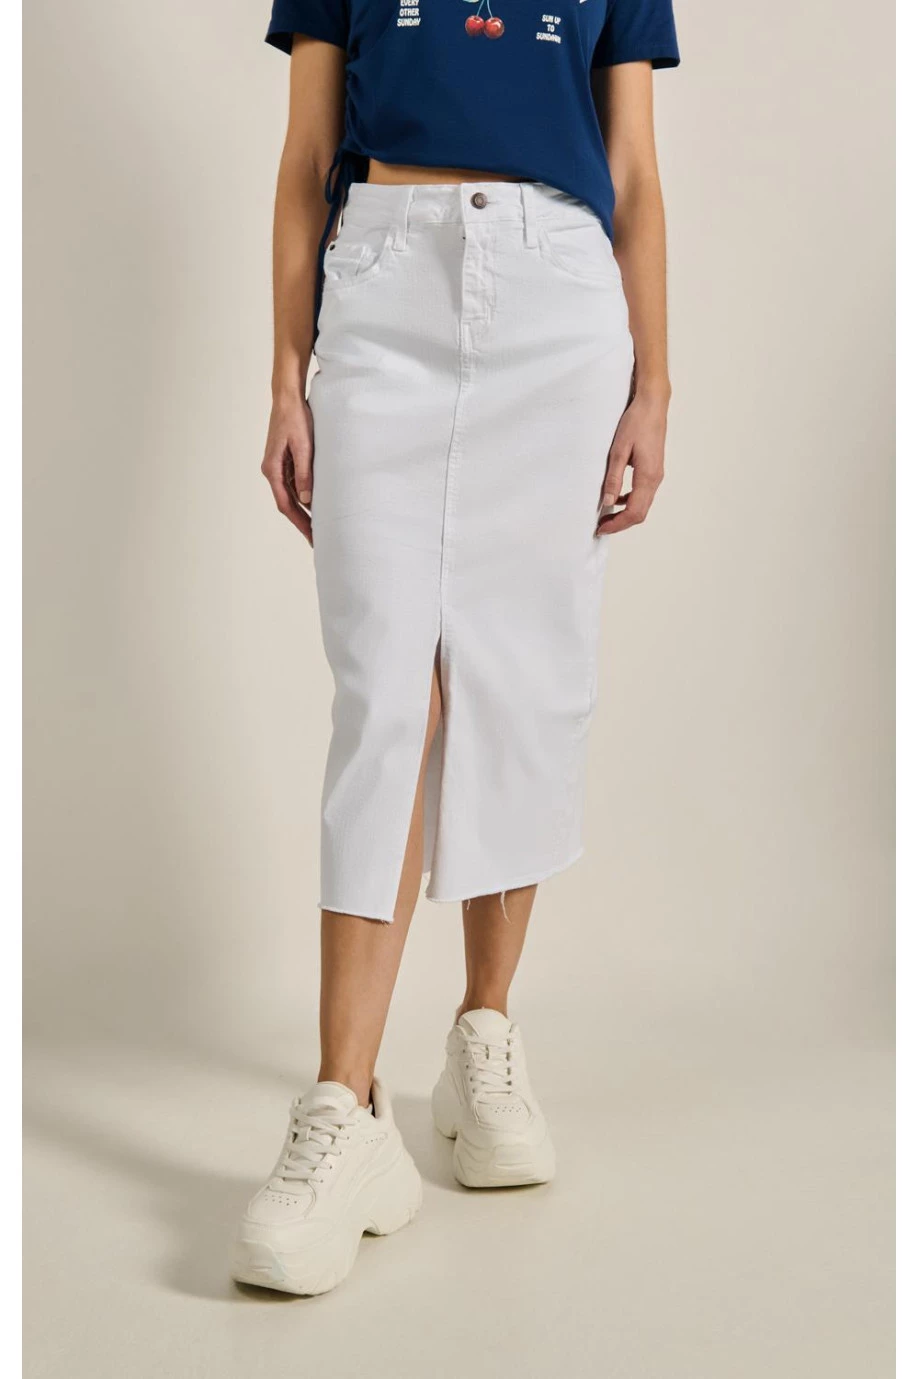 Falda blanca larga en jean tiro alto con abertura en frente